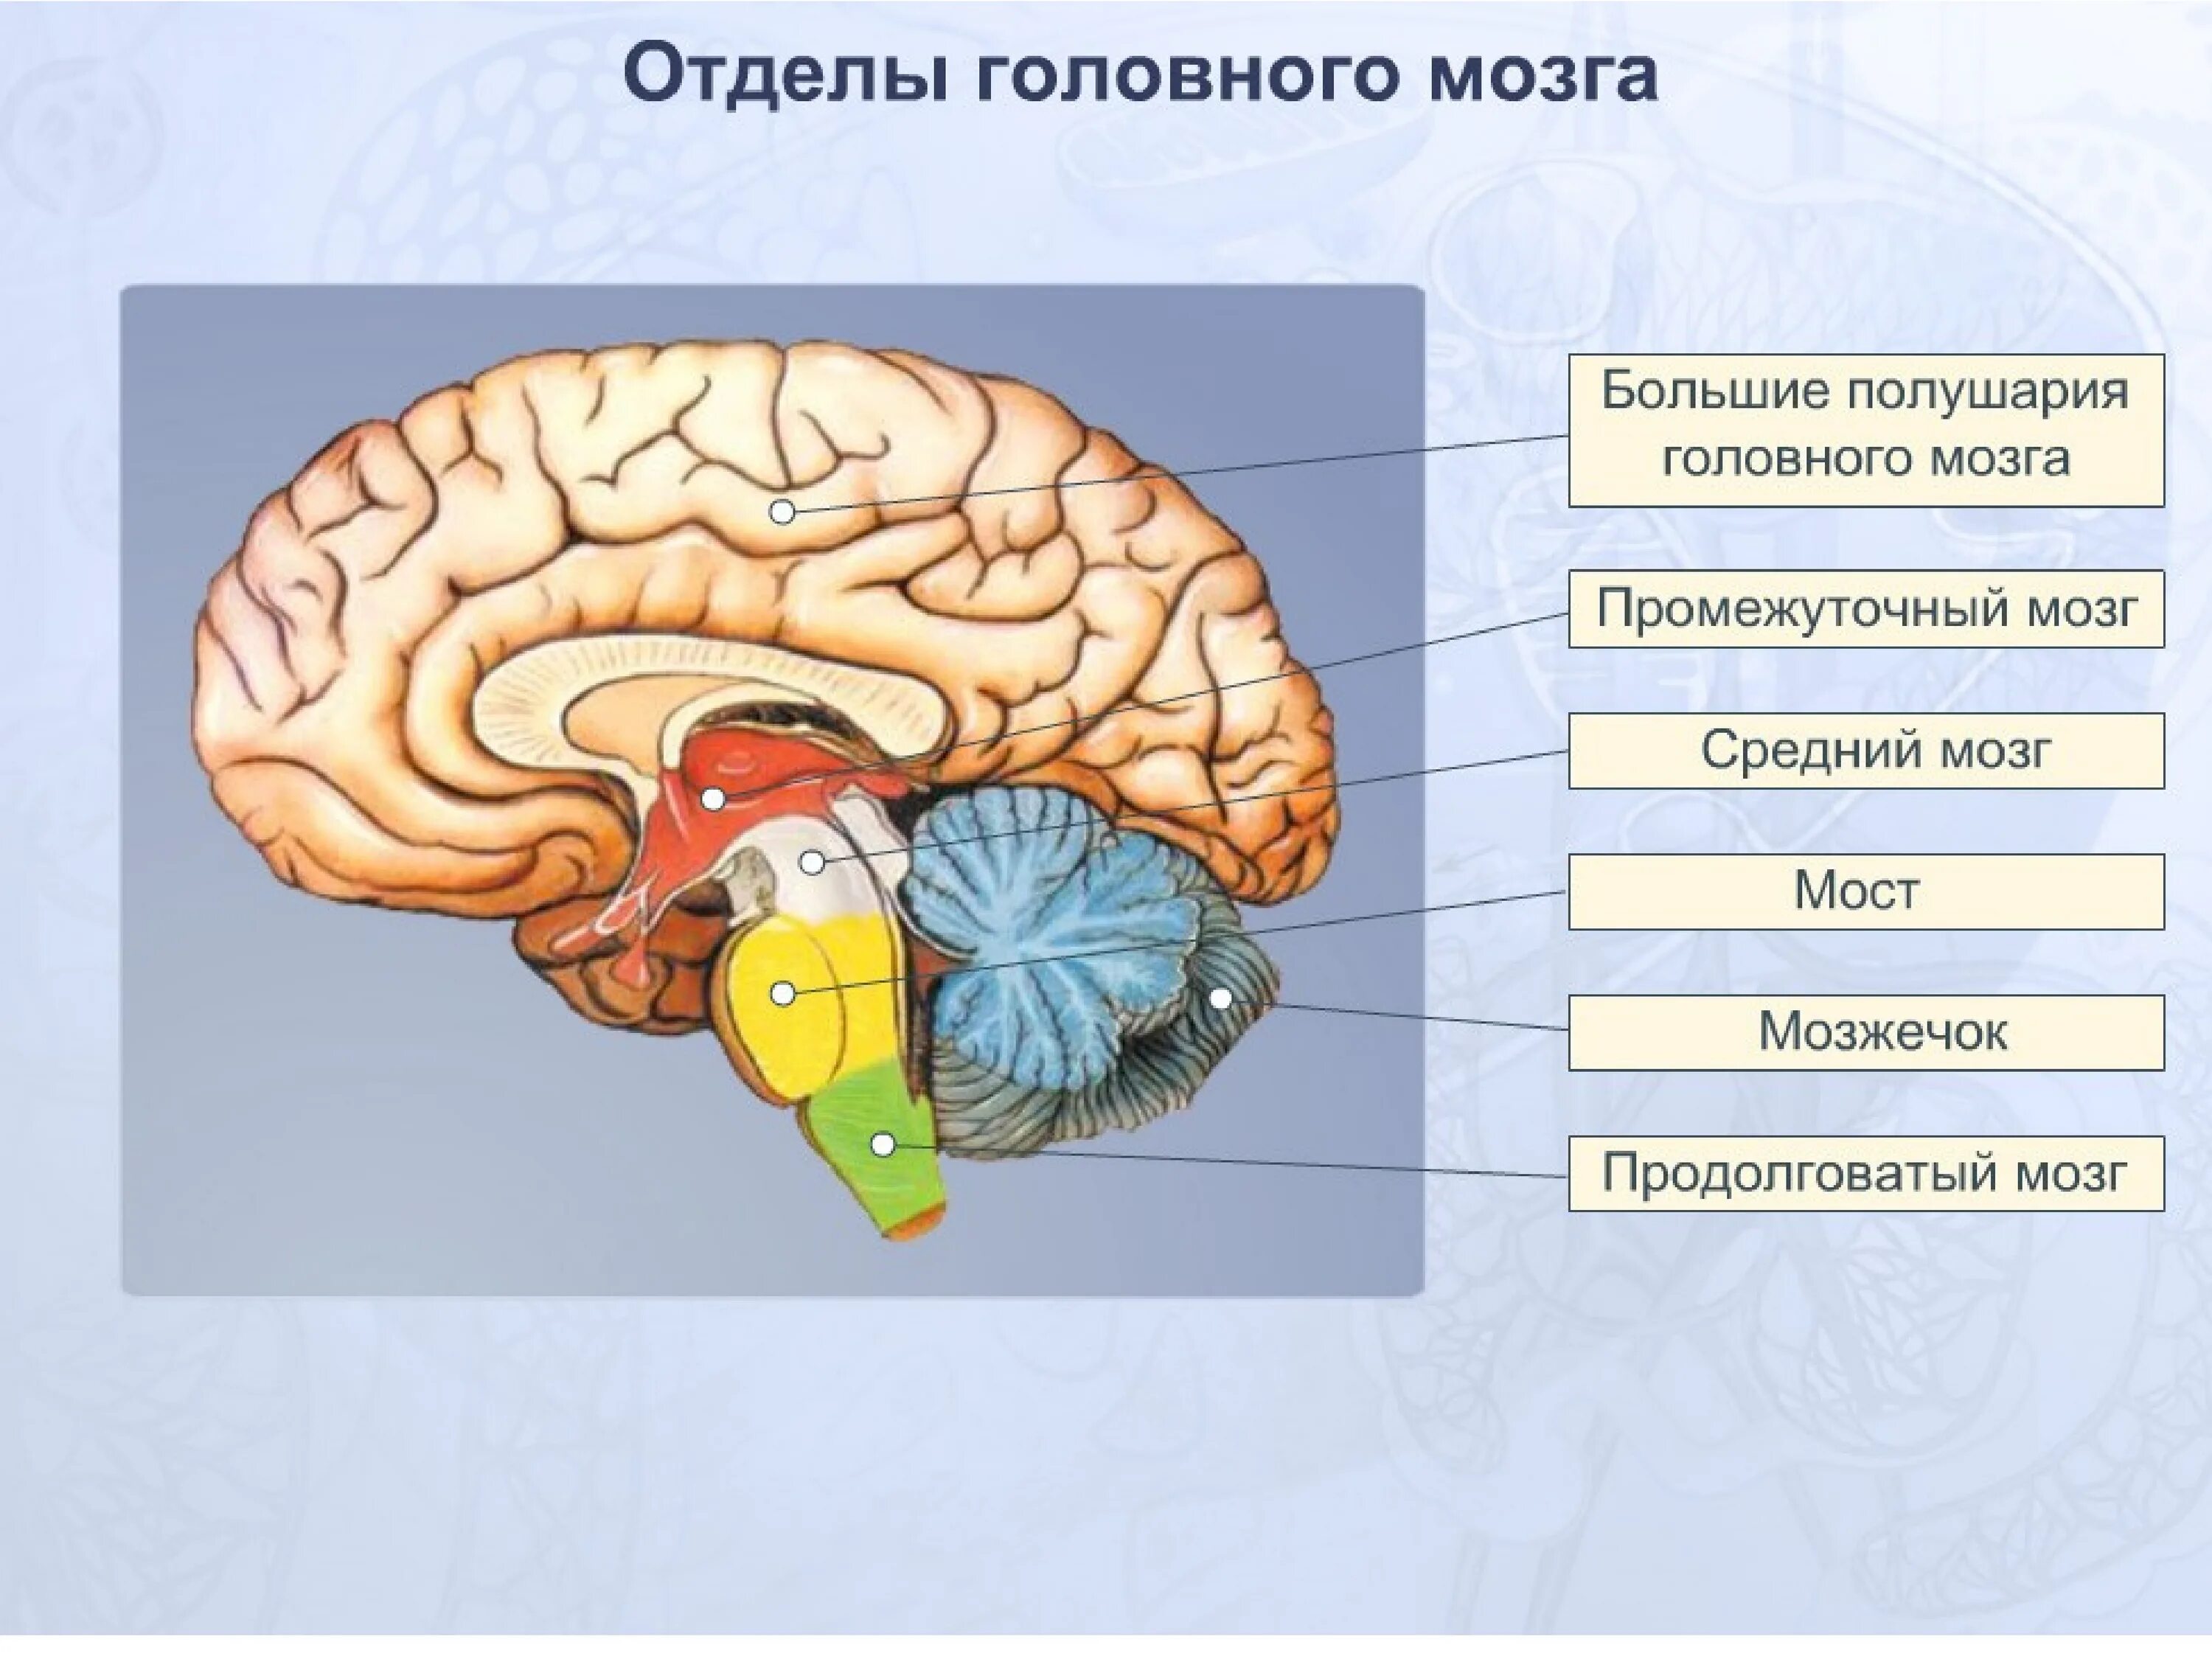 Головной мозг связан со. Схема основных отделов головного мозга. Отделы головного мозга анатомия. Название отделов головного мозга. Основные пять отделов головного мозга:.